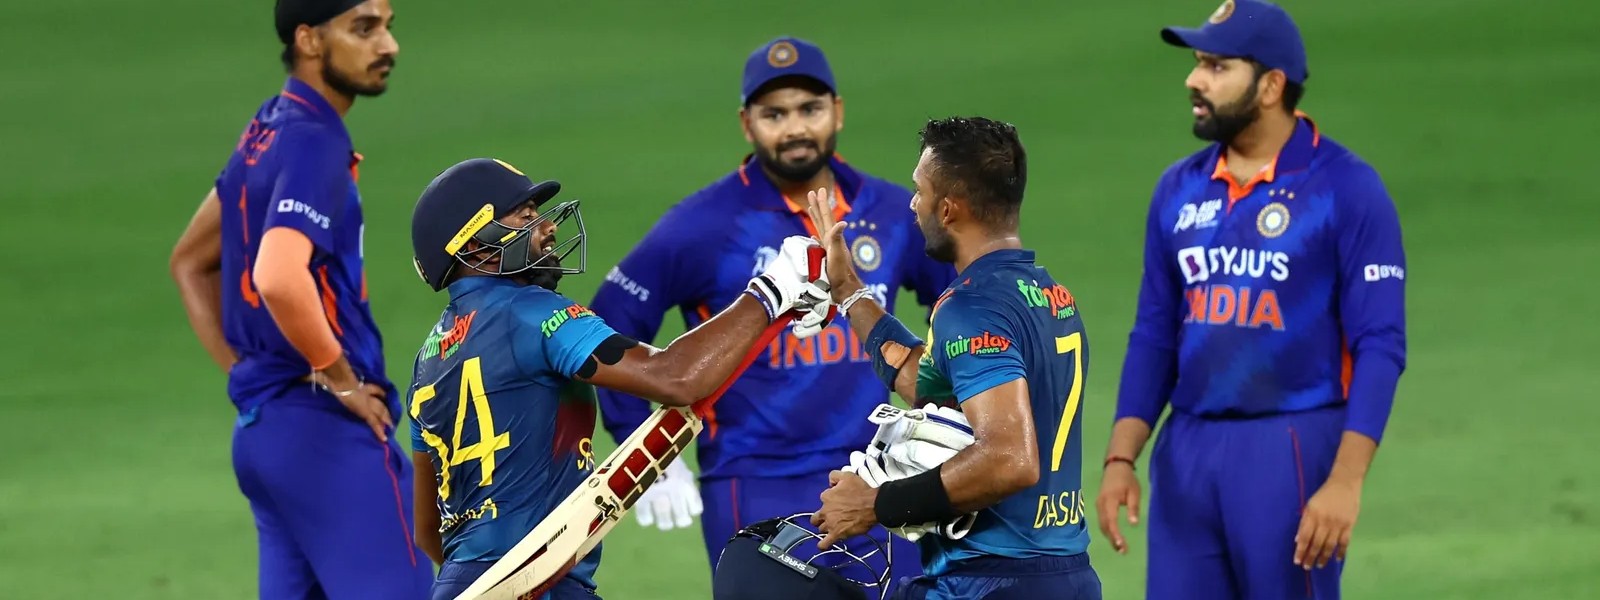 Sri Lanka eke out stunning win, beat India by 6 wickets